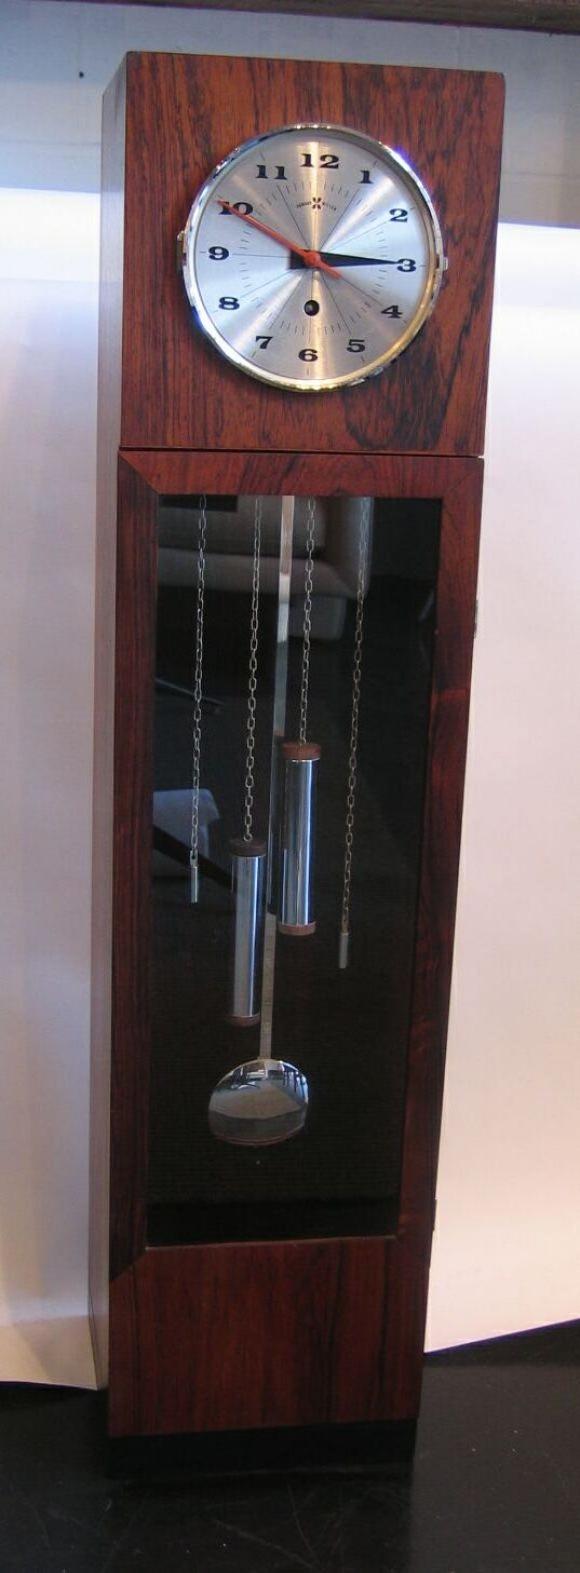 Belle horloge grand-père de table demi-hauteur en bois de rose. Conçu par George Nelson pour la société d'horlogerie Howard Miller. Mécanisme de remontage. Les poids et le pendule sont purement décoratifs.